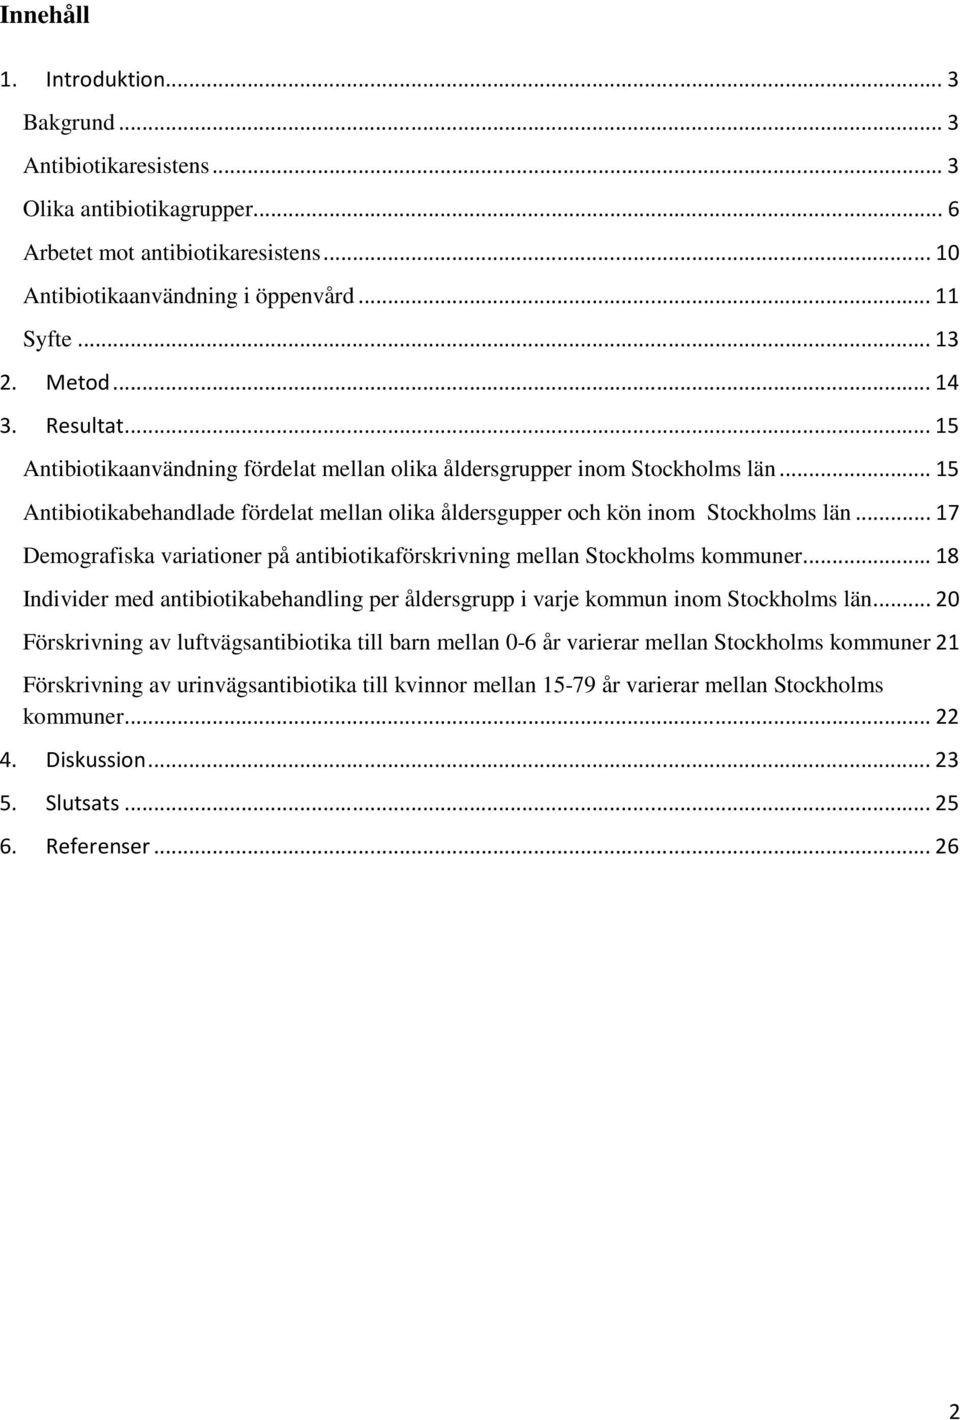 .. 17 Demografiska variationer på antibiotikaförskrivning mellan Stockholms kommuner... 18 Individer med antibiotikabehandling per åldersgrupp i varje kommun inom Stockholms län.